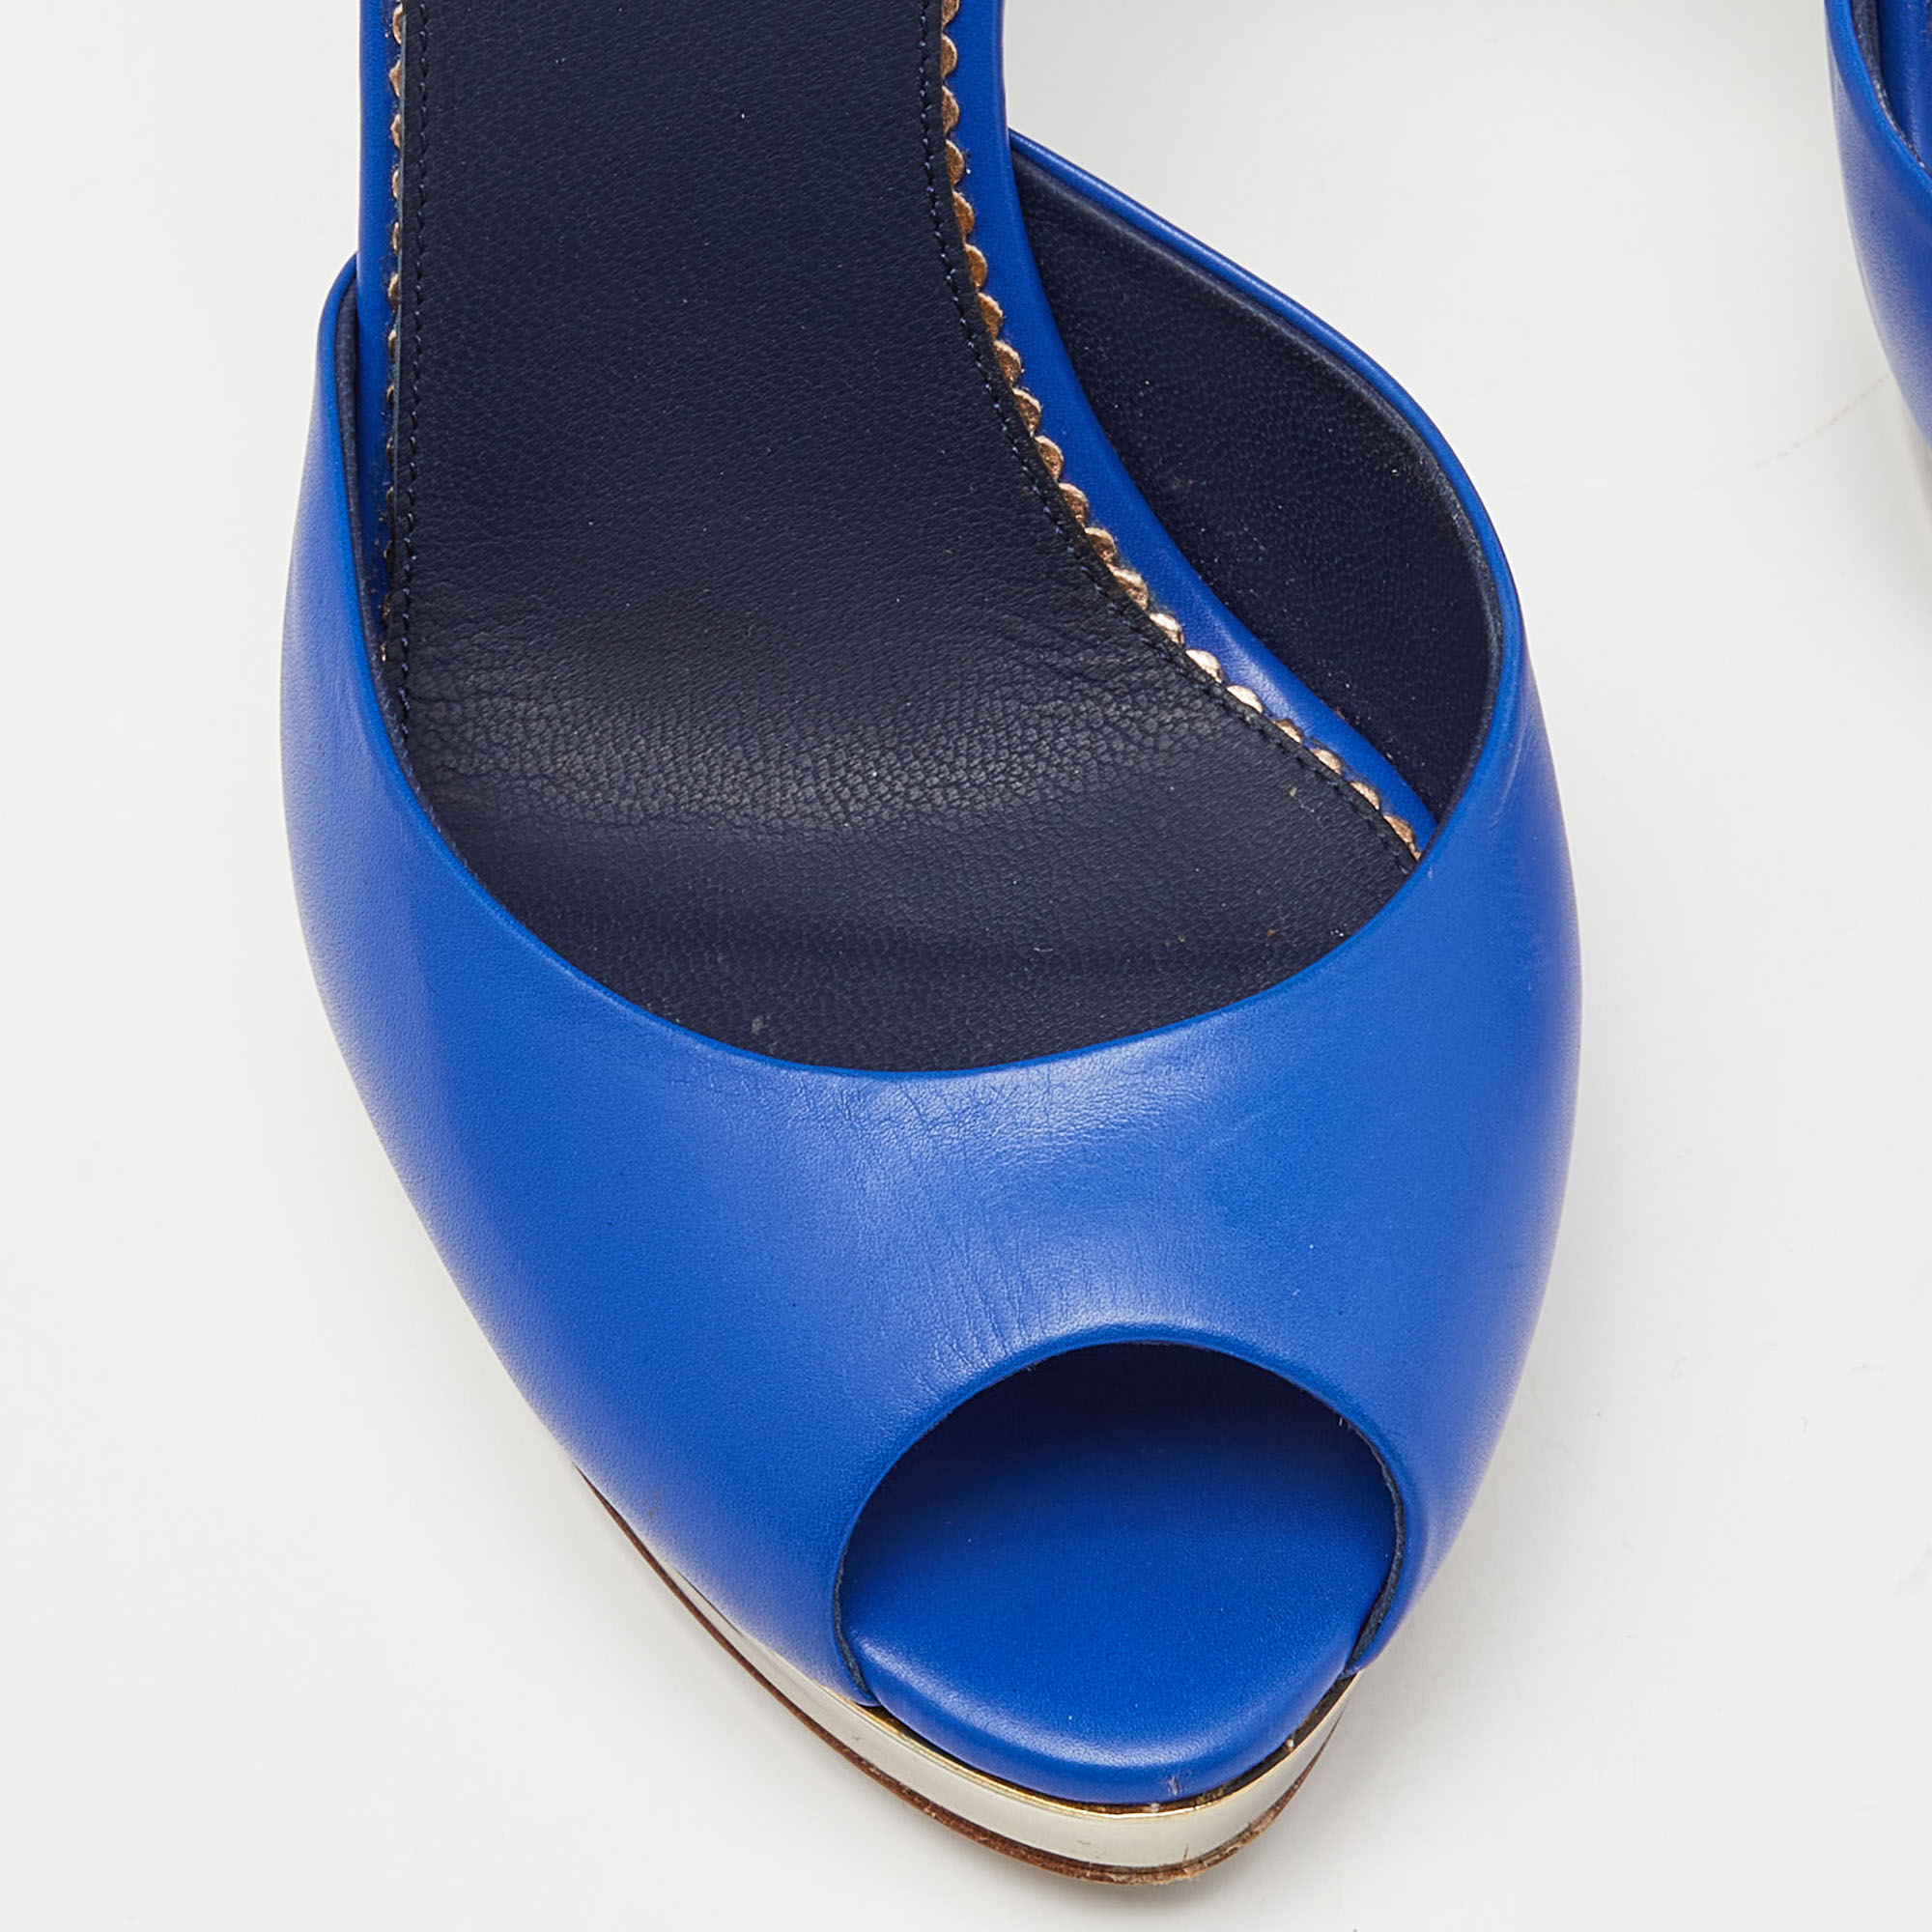 Le Silla Blue Leather Peep Toe Platform Ankle Strap Sandals Size 37.5